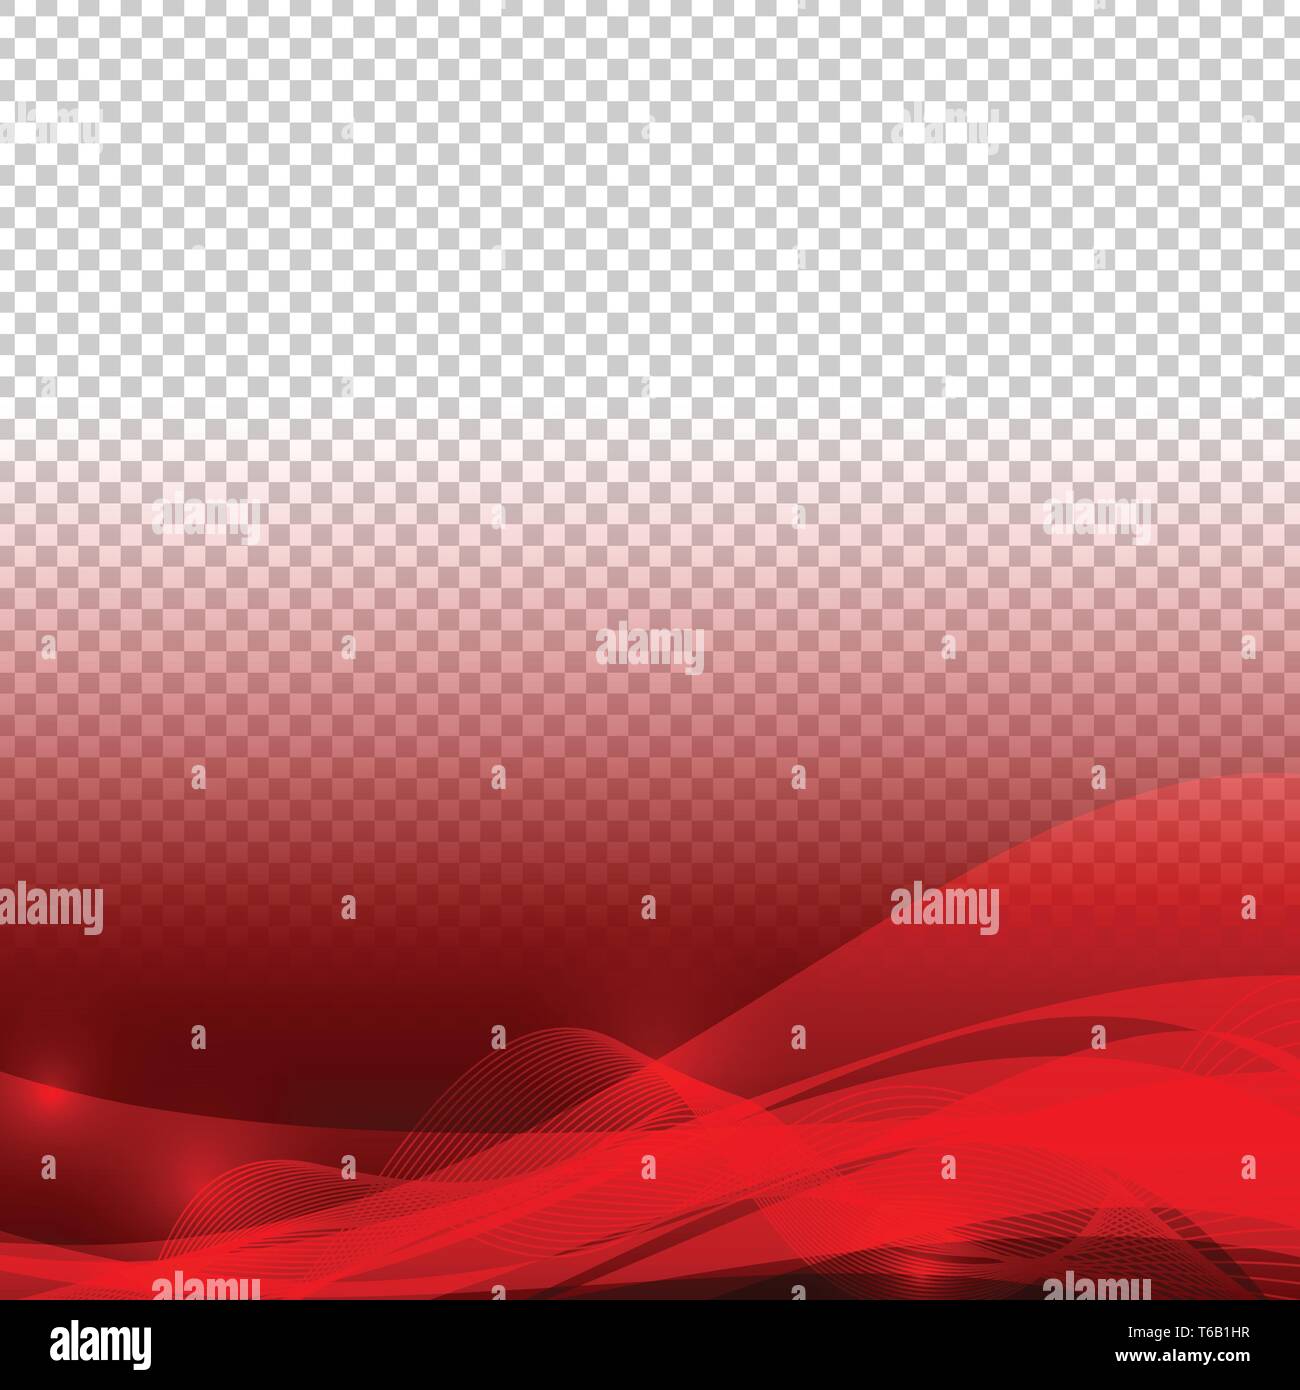 Couleur rouge éléments vagues abstract vector avec fond transparent Illustration de Vecteur